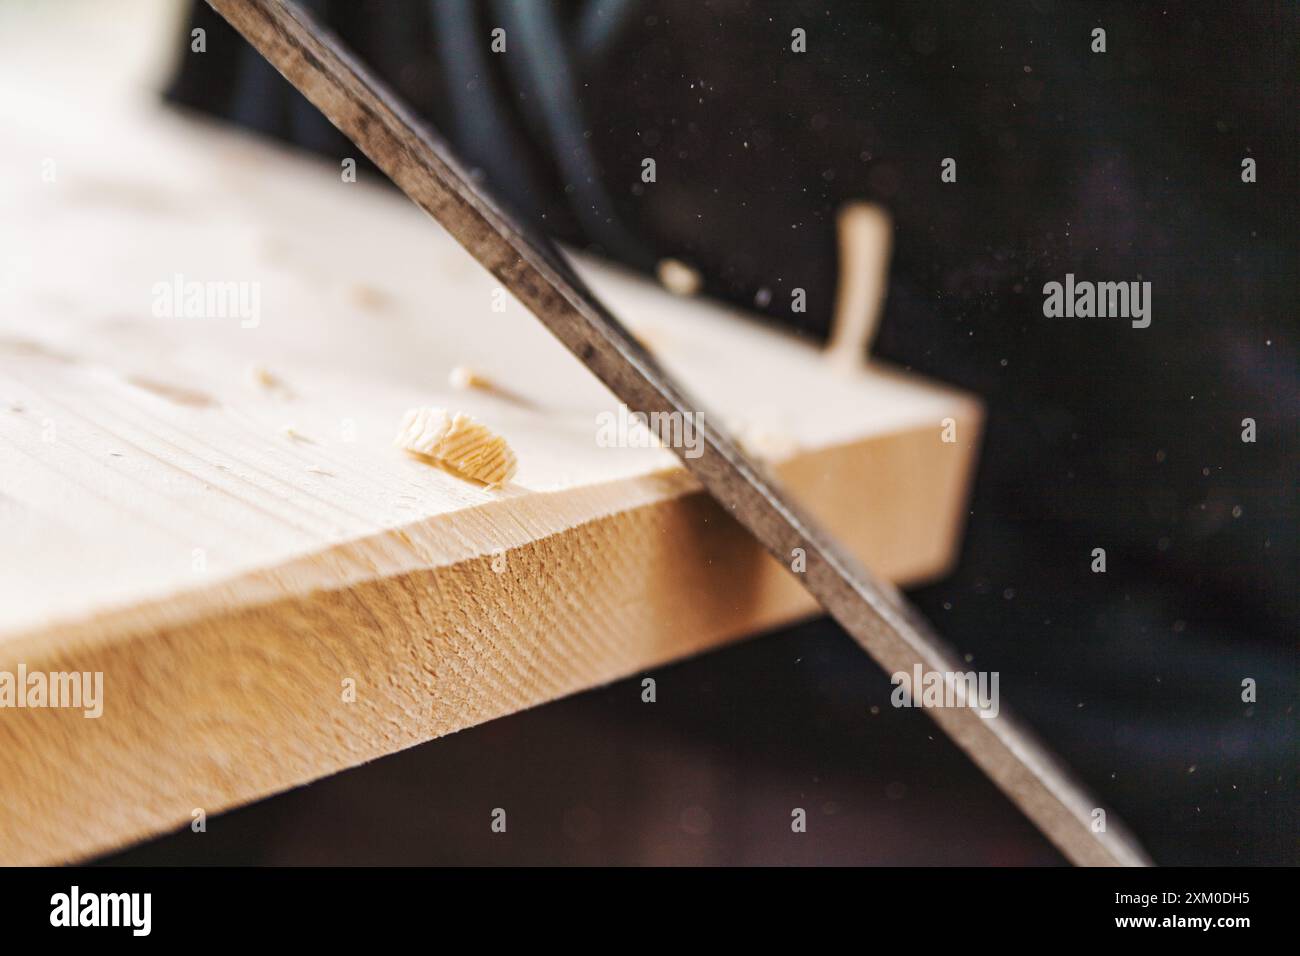 Charpentier qualifié lissant la planche de bois avec râpe dans un atelier occupé, créant de la sciure de bois. Gros plan montrant des mains au travail, mettant en évidence l'artisanat et le dedi Banque D'Images